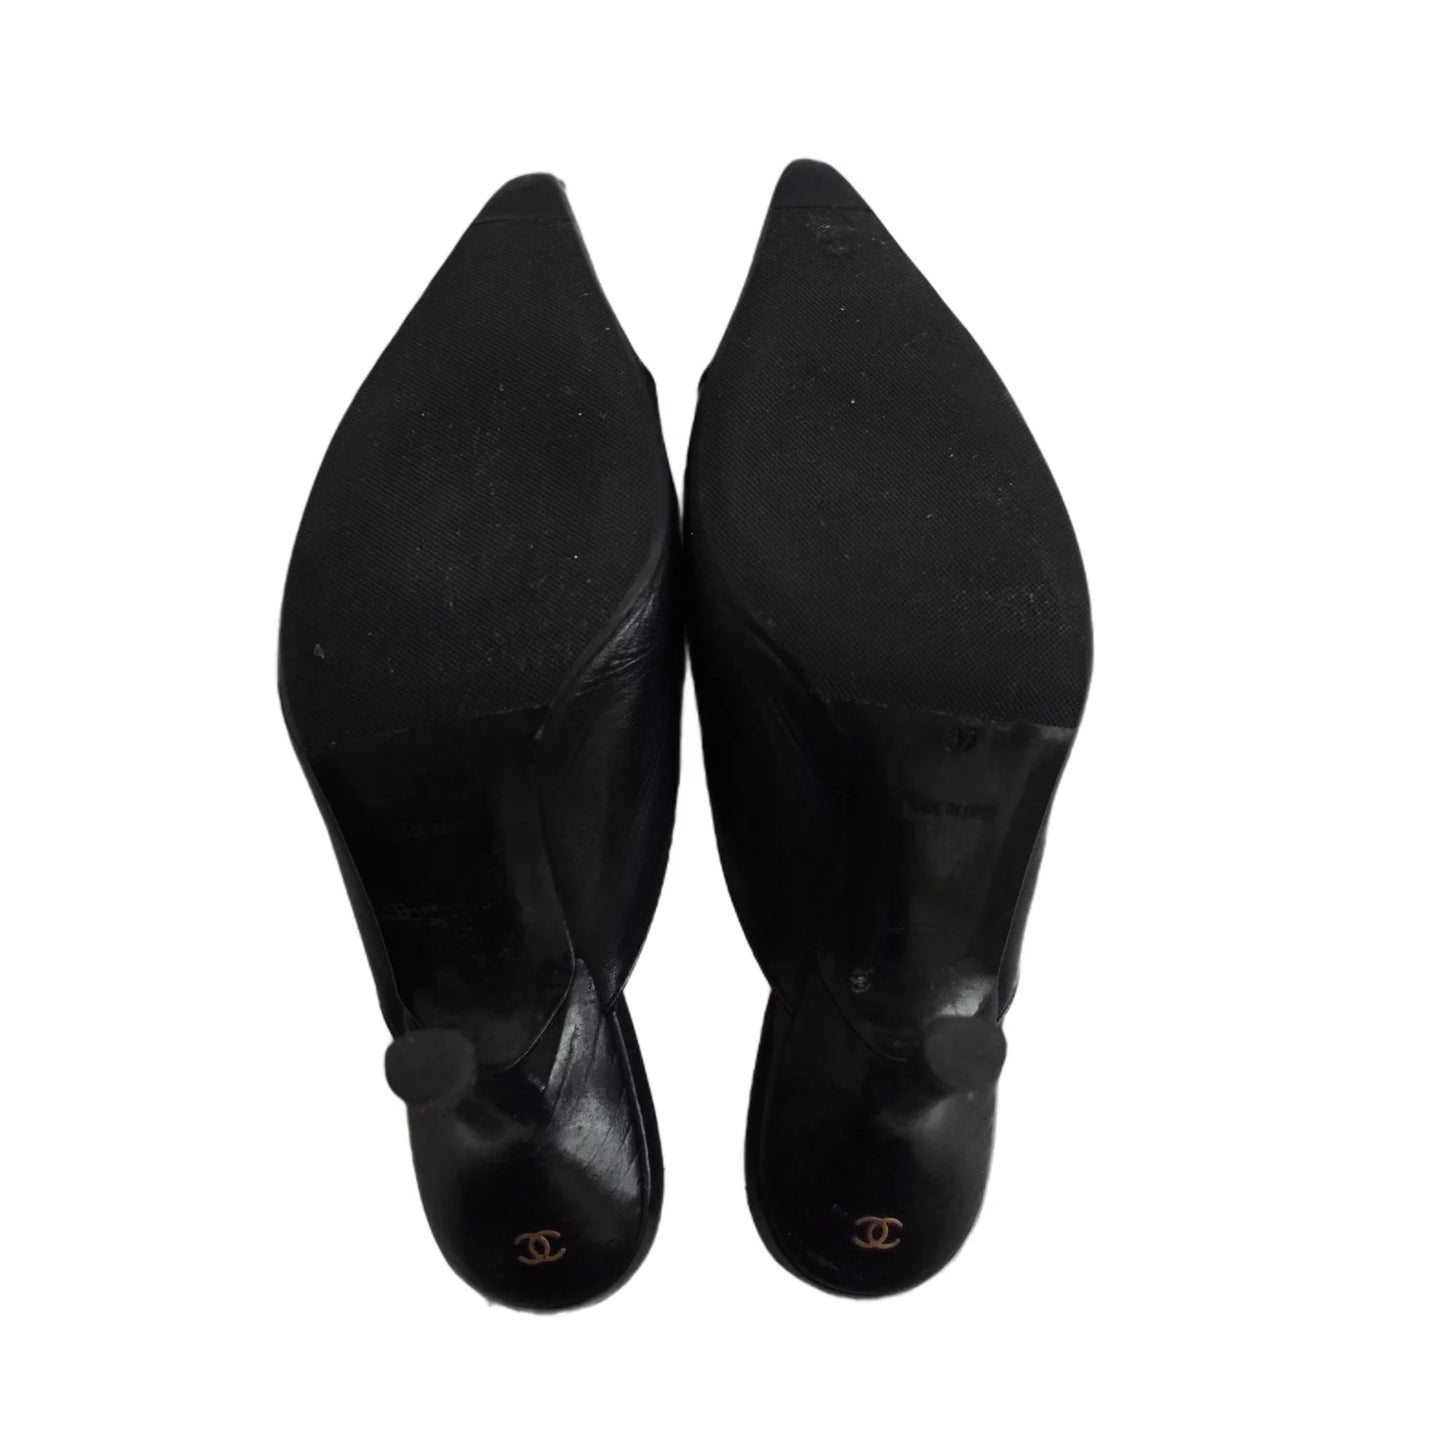 Chanel Logo Bow Mule Heels in Black, 37